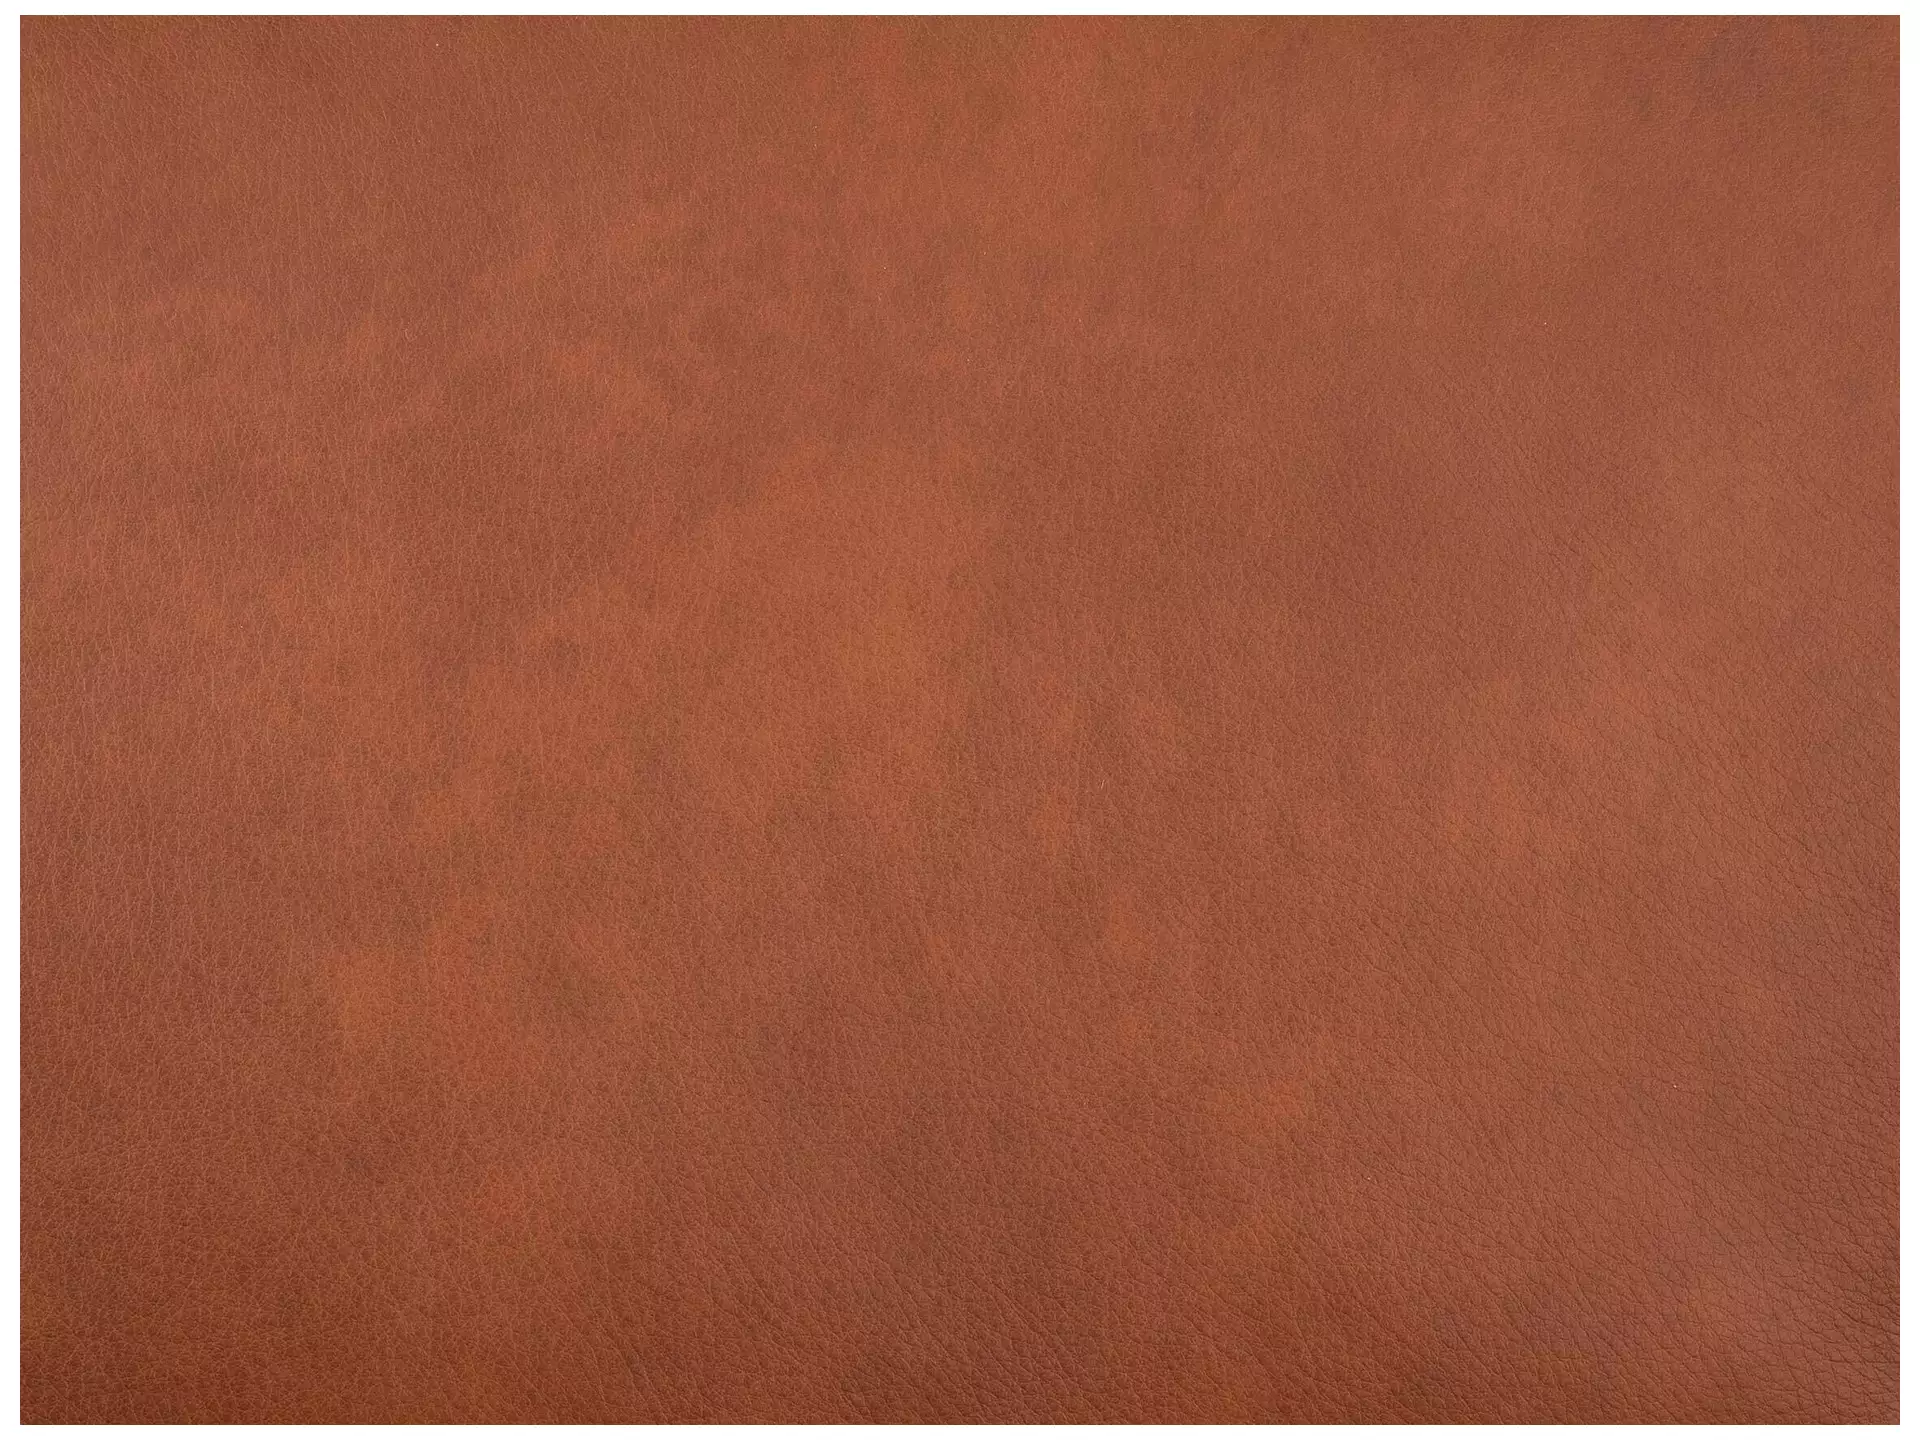 Sofa Foscaari b: 213 cm Schillig Willi / Farbe: Cognac, Material: